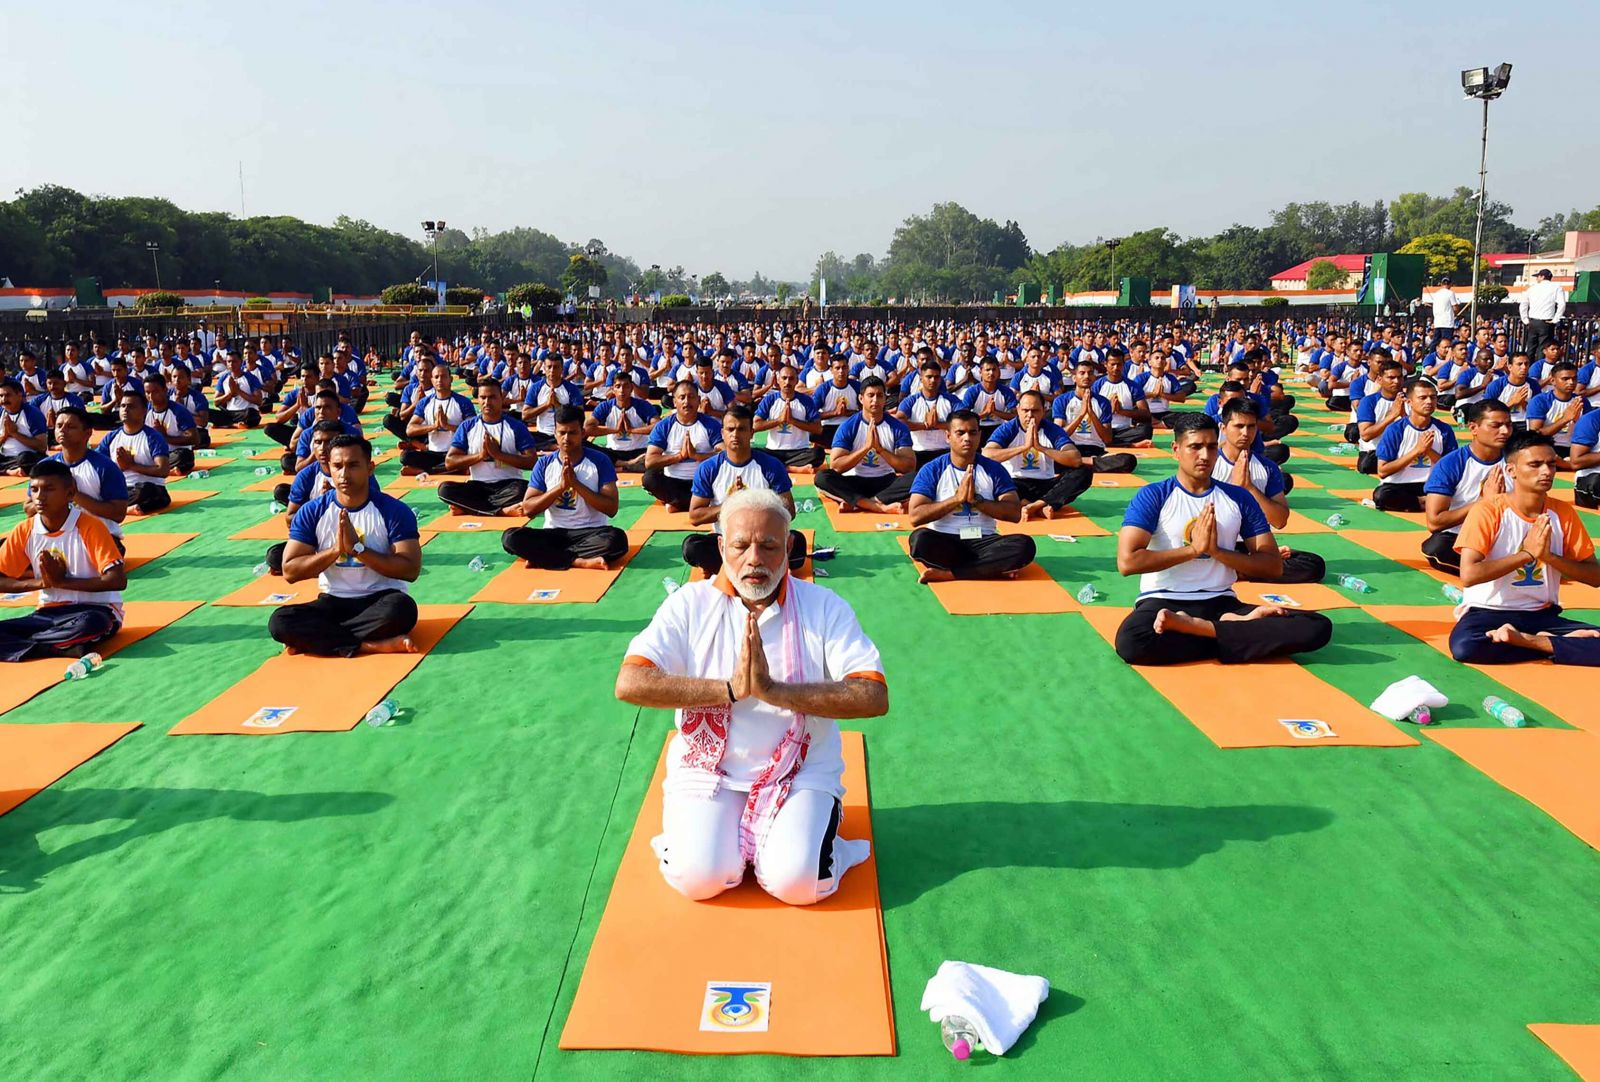 印度總理莫迪與萬人齊做瑜伽